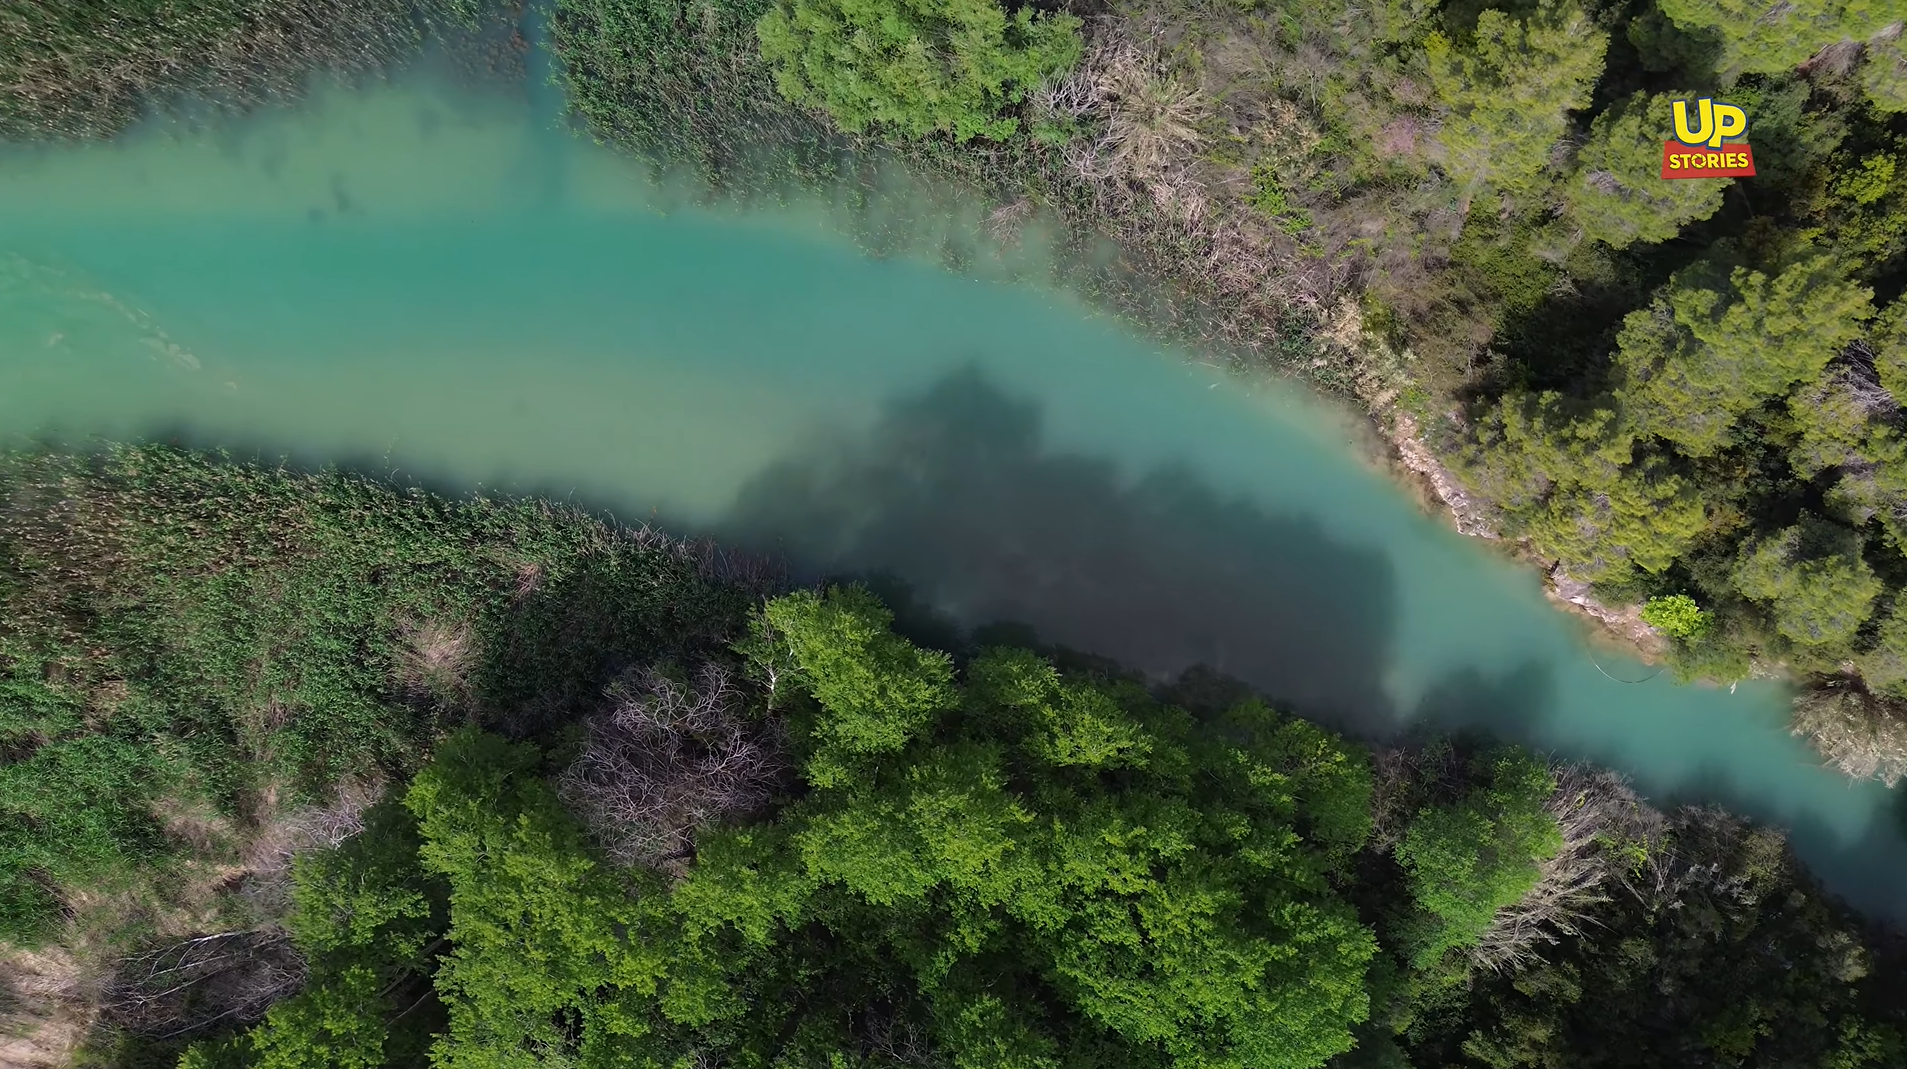 Το άγνωστο ποτάμι που τροφοδοτεί με νερό την τεχνητή λίμνη του Μαραθώνα. Δείτε από ψηλά την υπέροχη πορεία του (drone)